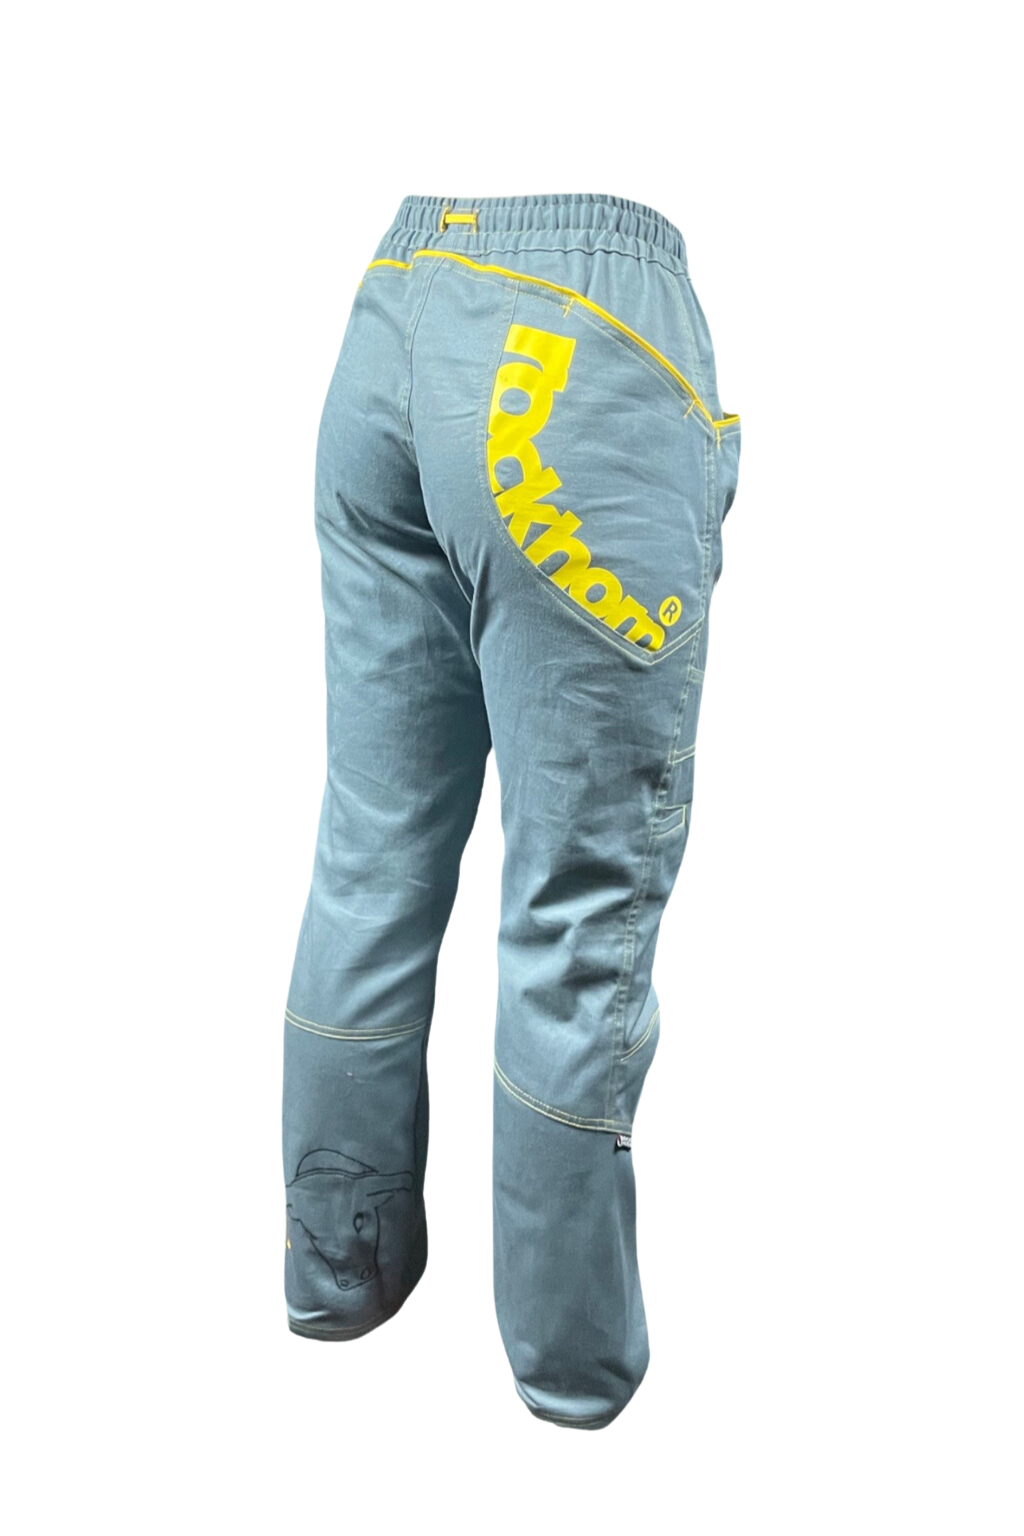 dámské kalhoty MORAVIA DREAMS NEW / šedé KALHOTY: XL